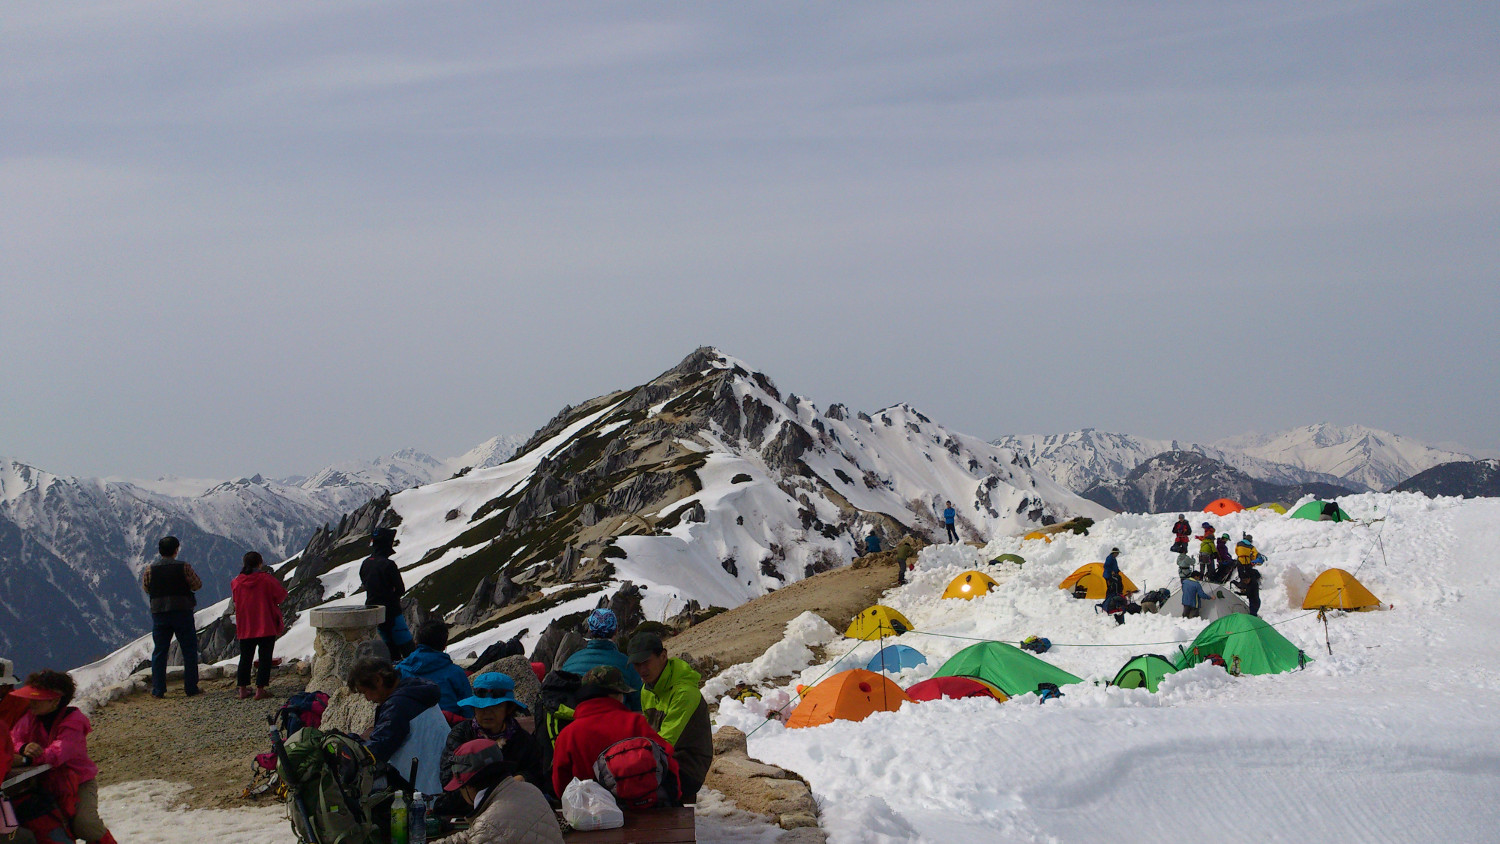 2012年4月末撮影、燕山荘から見る燕岳、テントがカラフル